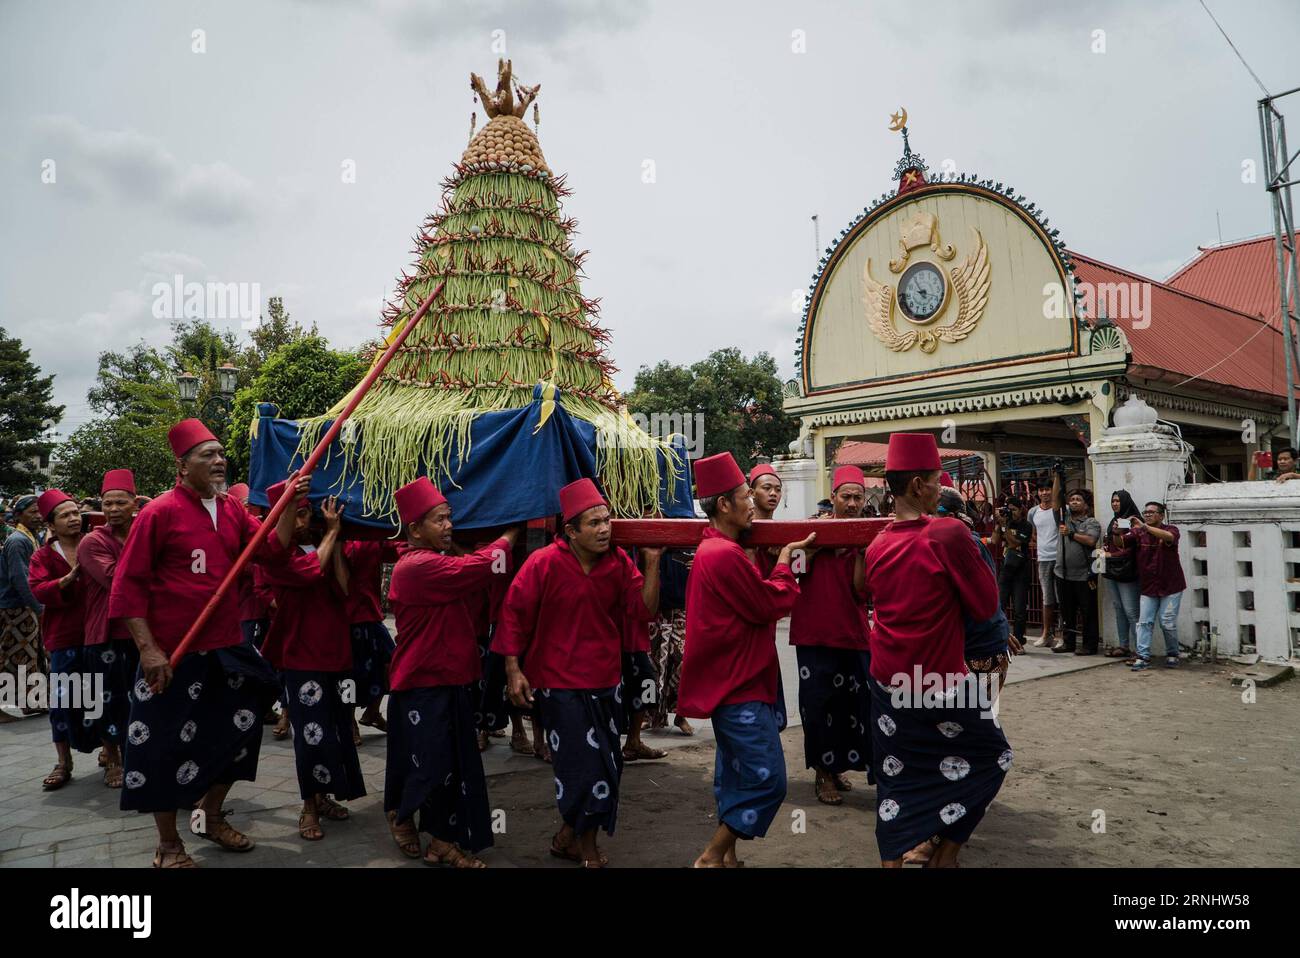 (161212) -- YOGYAKARTA, 12. Dezember 2016 -- Menschen tragen den Gunungan während der Grebeg-Maulud-Prozession, um den Geburtstag des Propheten Mohammed in Yogyakarta, Indonesien, 12. Dezember 2016 zu feiern. Der Yogyakarta-Palast hielt ein Grebeg-Ritual ab, indem er sieben Gunungan machte, die als Symbol des Segens in Erinnerung an den Geburtstag des Propheten Mohammed angefochten werden. (yk) INDONESIEN-YOGYAKARTA-PROPHET-BIRTHDAY-CELEBRATION OkaxHamied PUBLICATIONxNOTxINxCHN 161212 Yogyakarta DEZ 12 2016 Prominente tragen den Gunungan während der Grebeg Maulud Prozession, um den Propheten Mohammed S Geburtstag in Yogyakarta Indo zu feiern Stockfoto